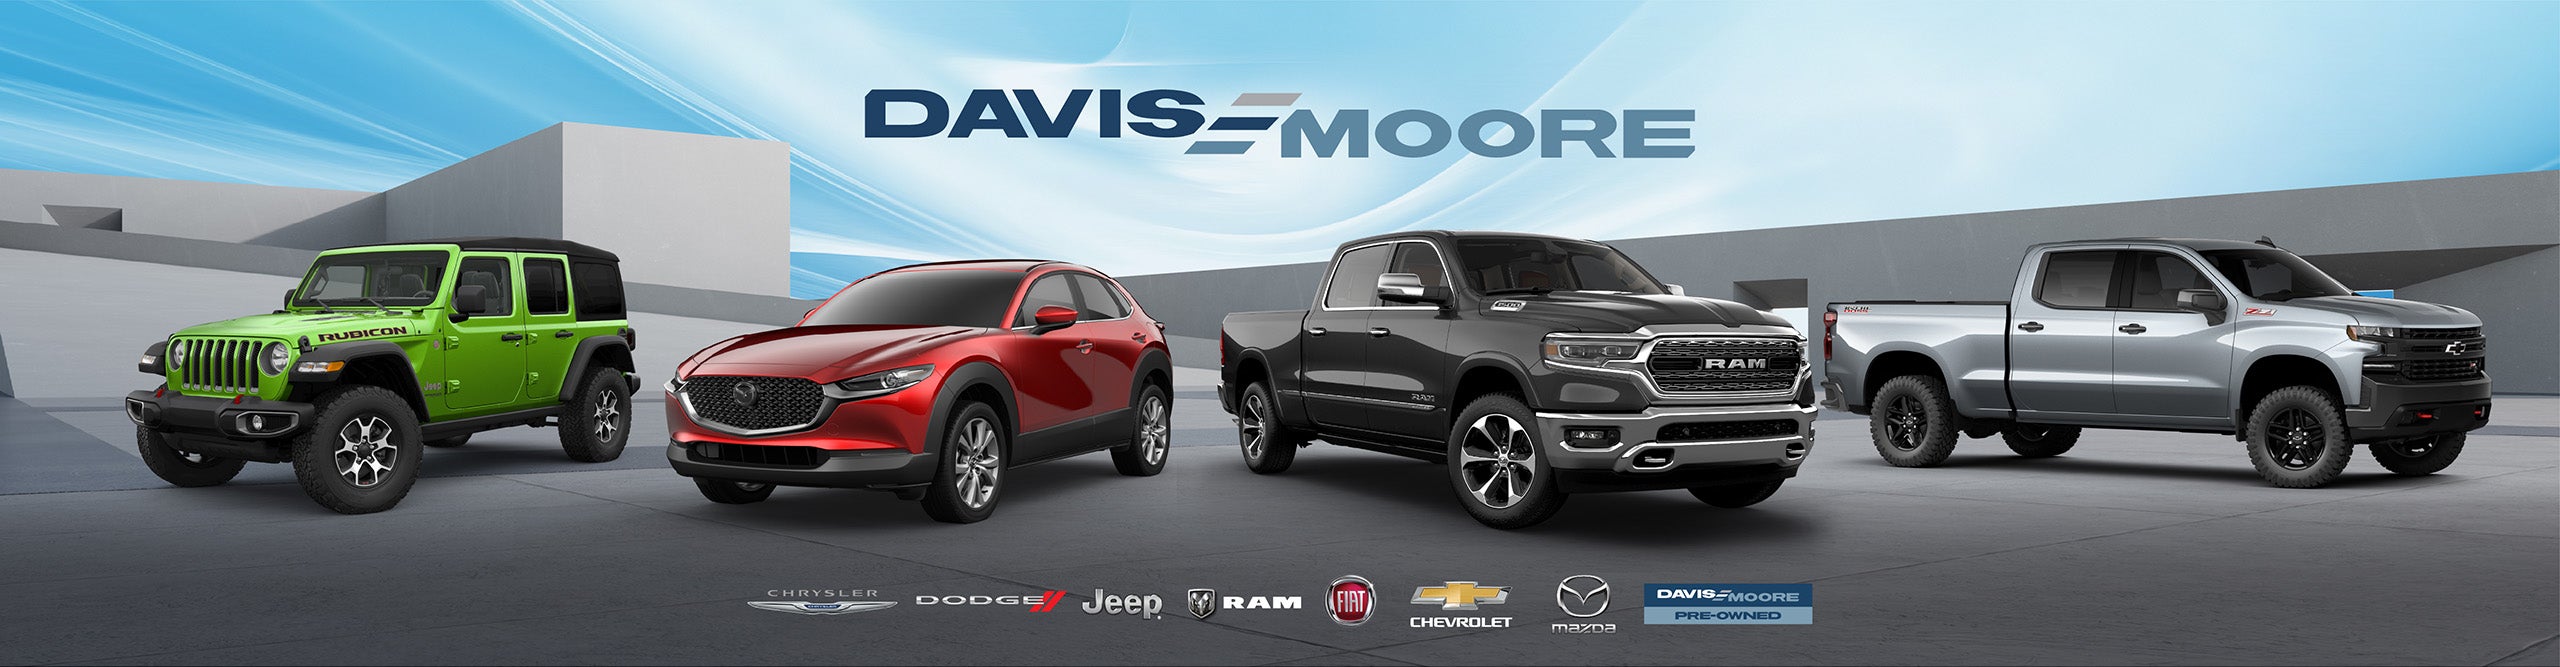 Davis-Moore Auto Group in Wichita KS